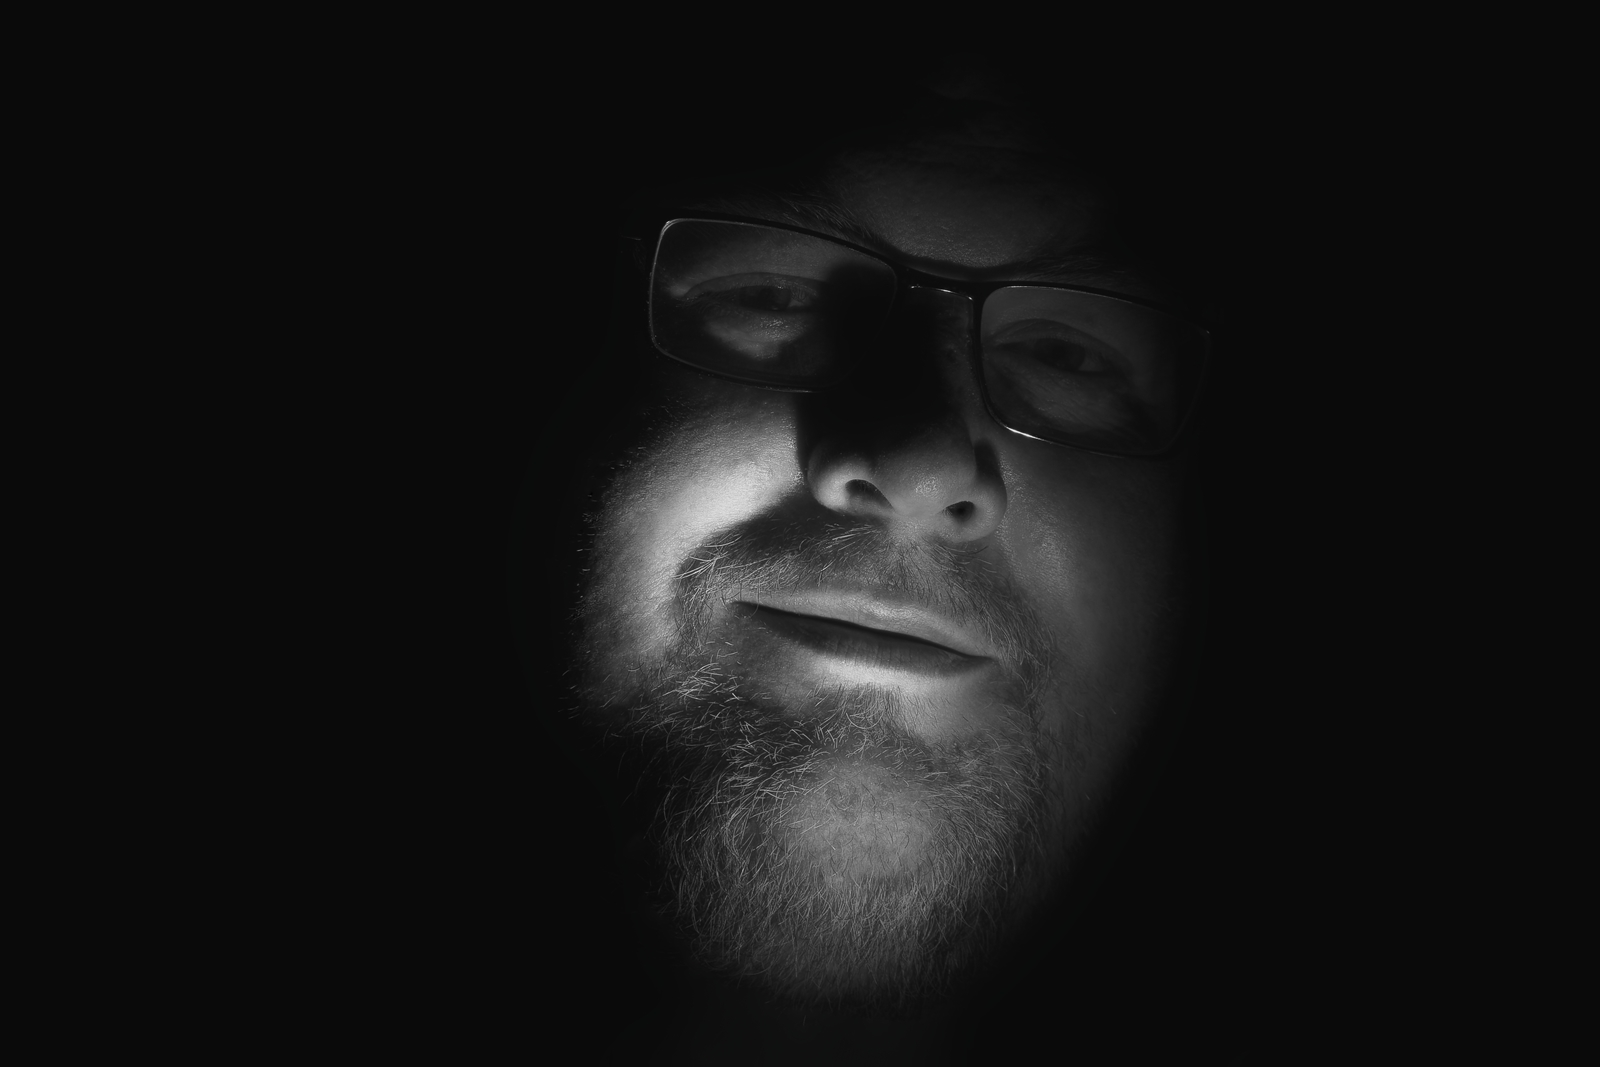 Schwarz Weiß Portrait mit Blitz von Danny Koerber für Sehnsucht der Augen.